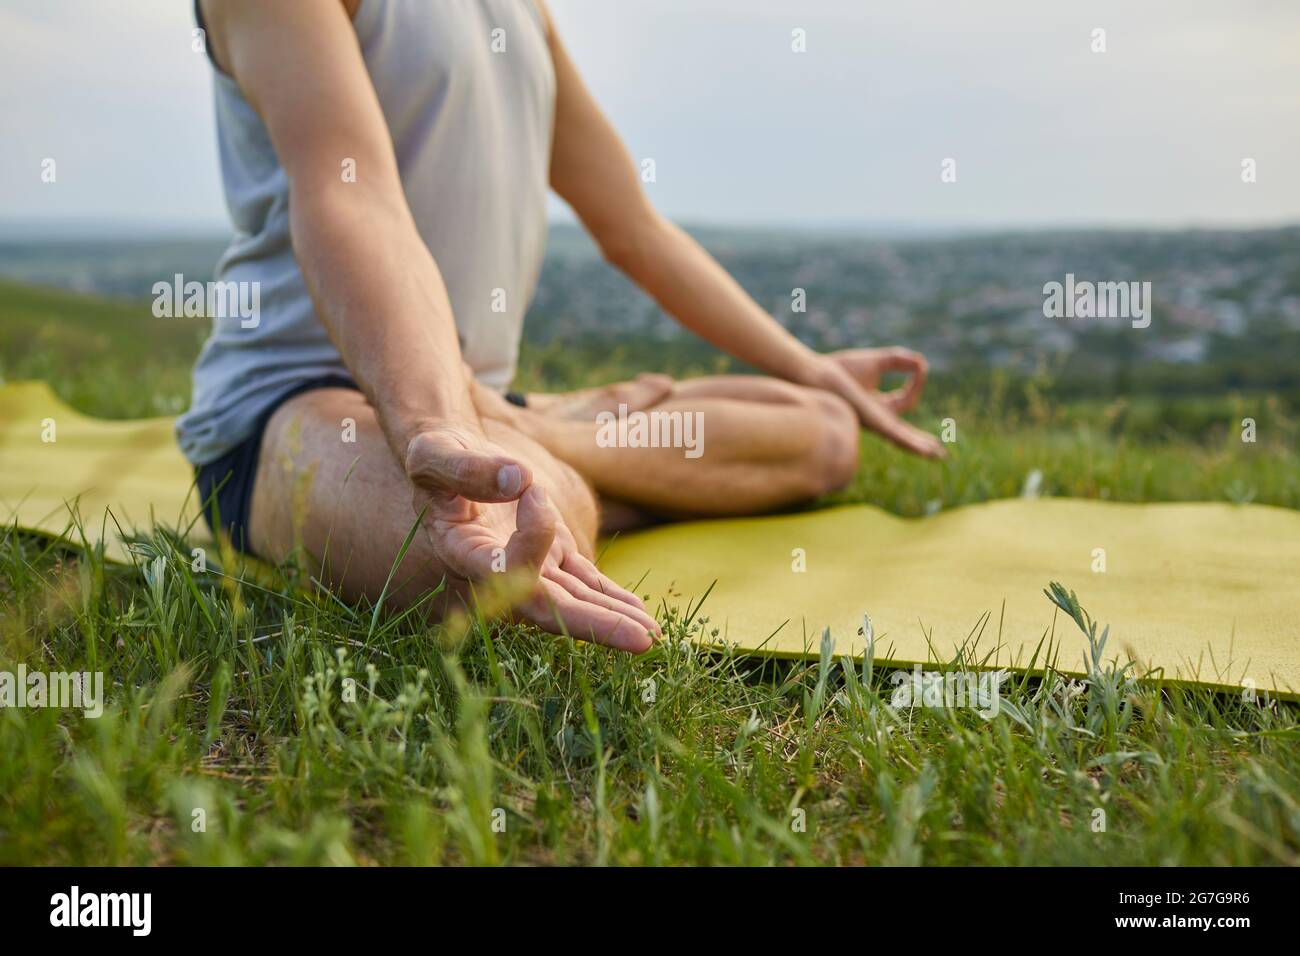 Anonymer männlicher Yogi, der sich entspannt und inneren Frieden erreicht, während er Yoga in der Natur praktiziert Stockfoto